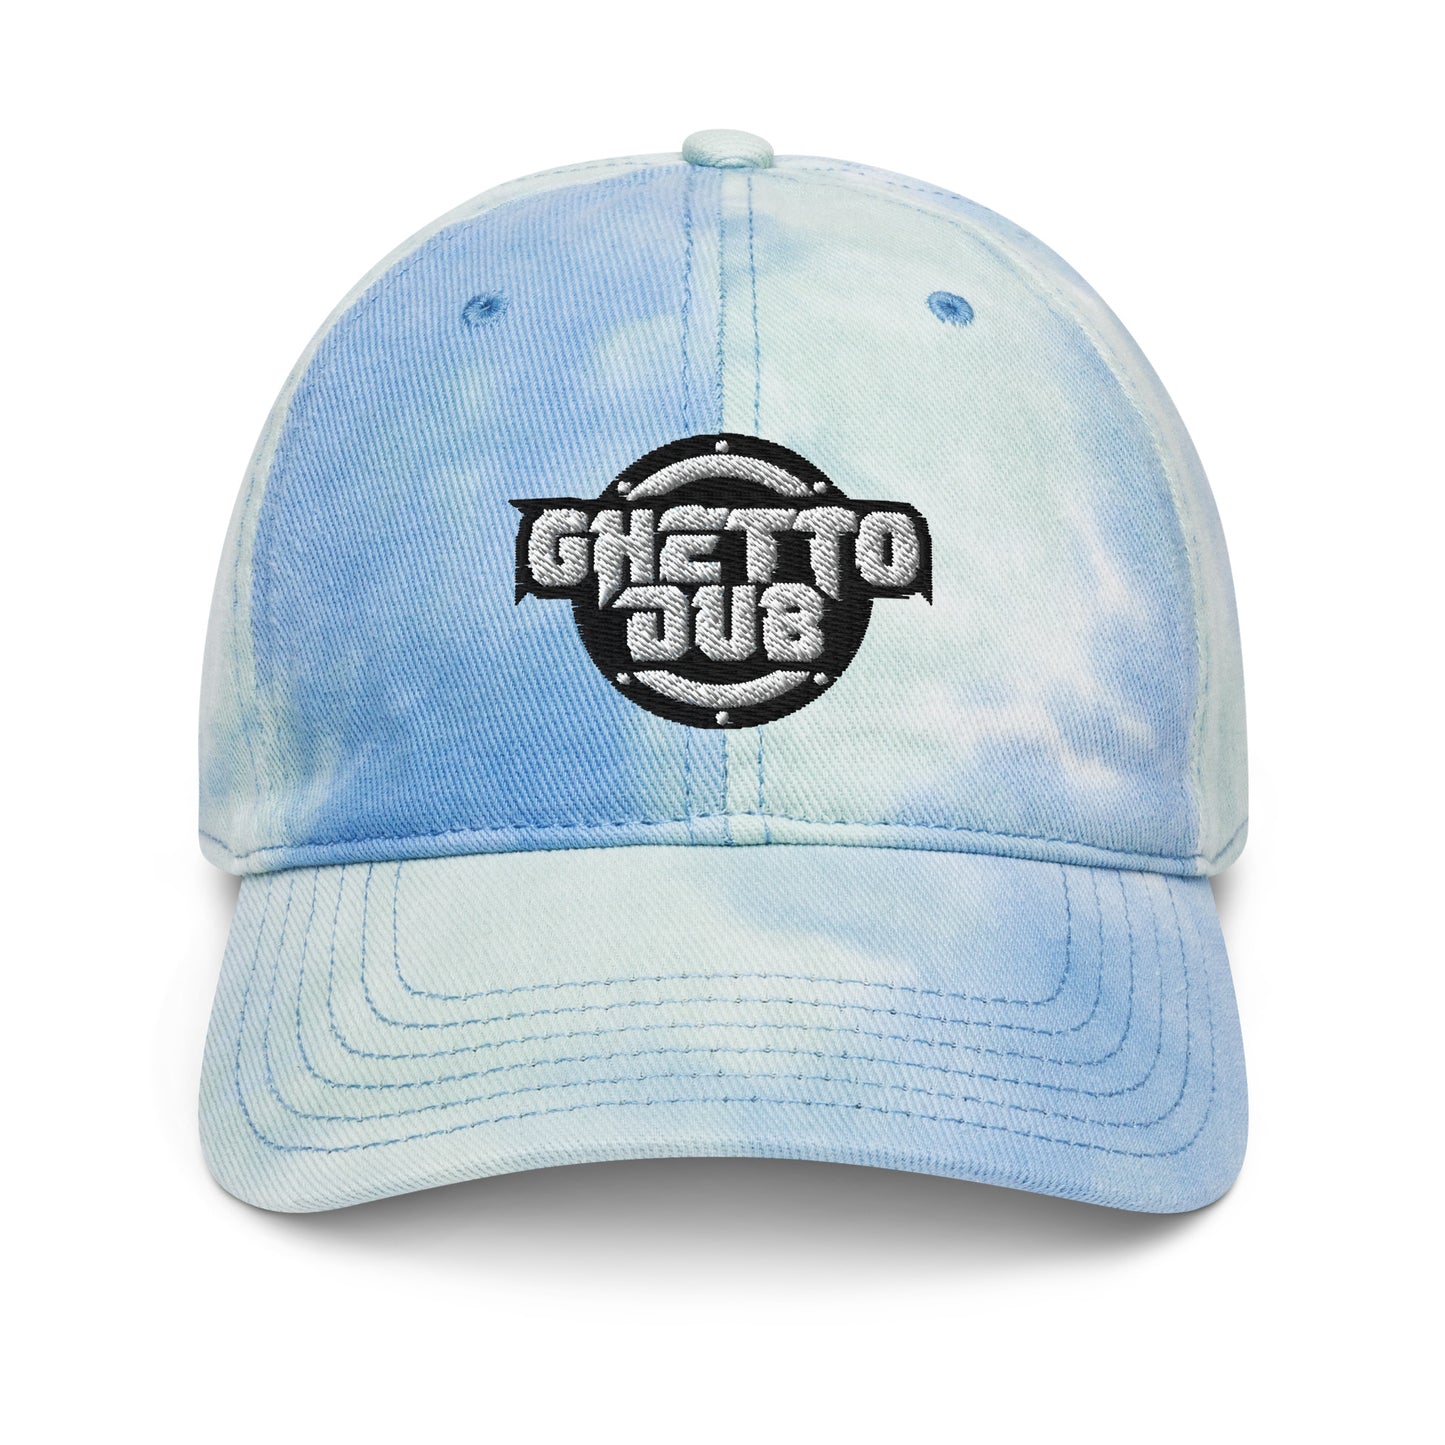 Ghetto Dub - Tye Dye Baseball cap